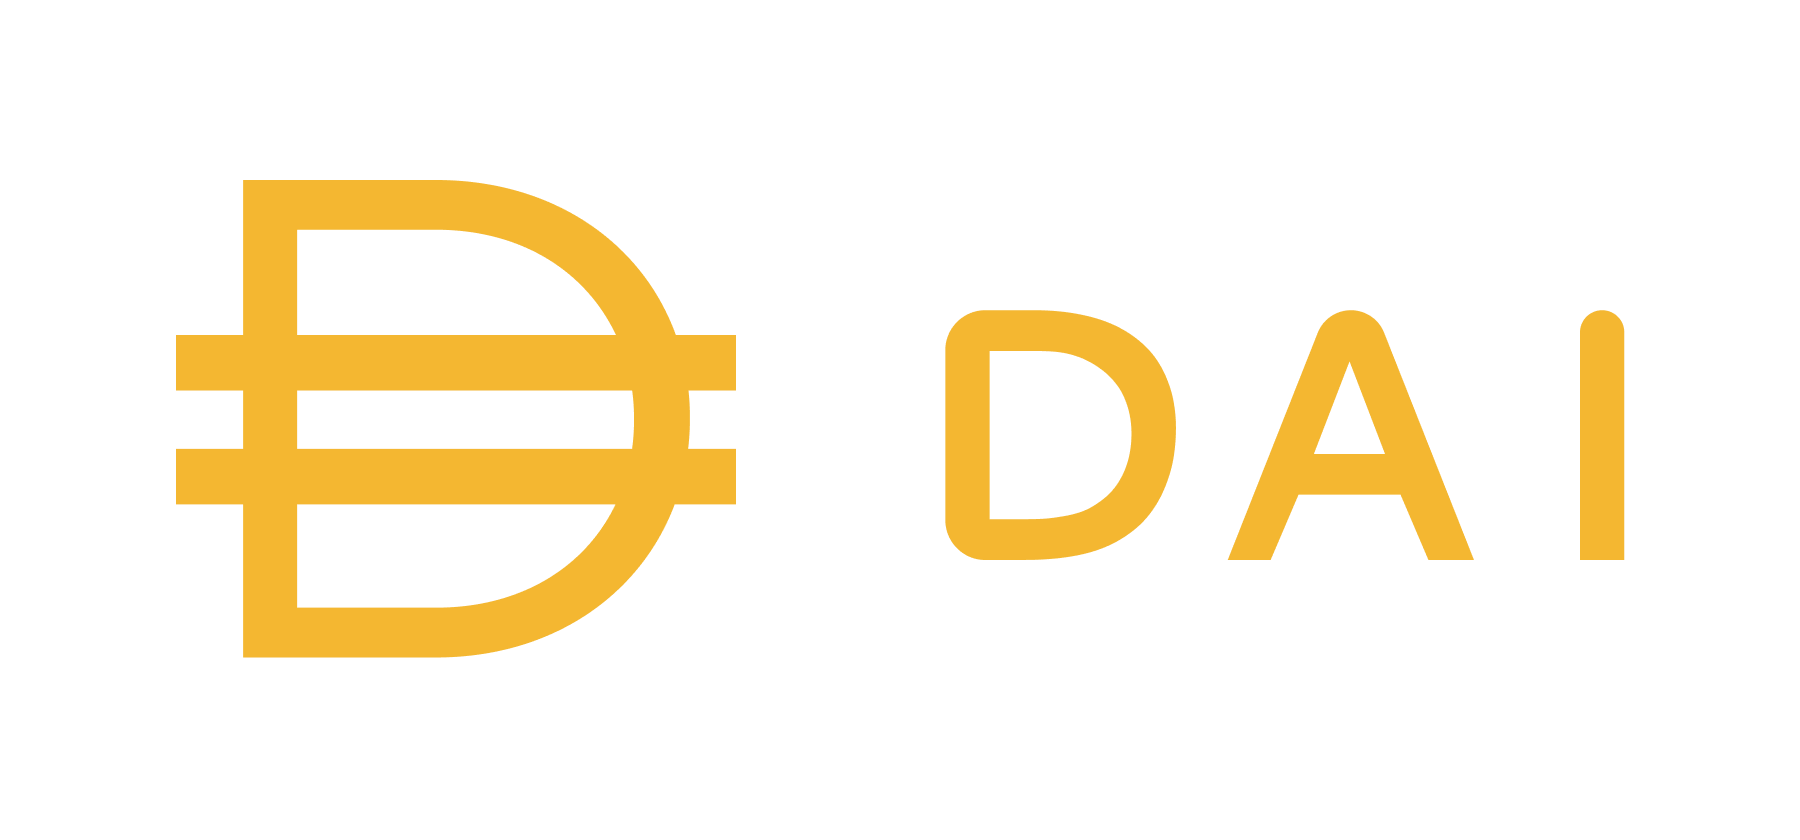 Logo DAI